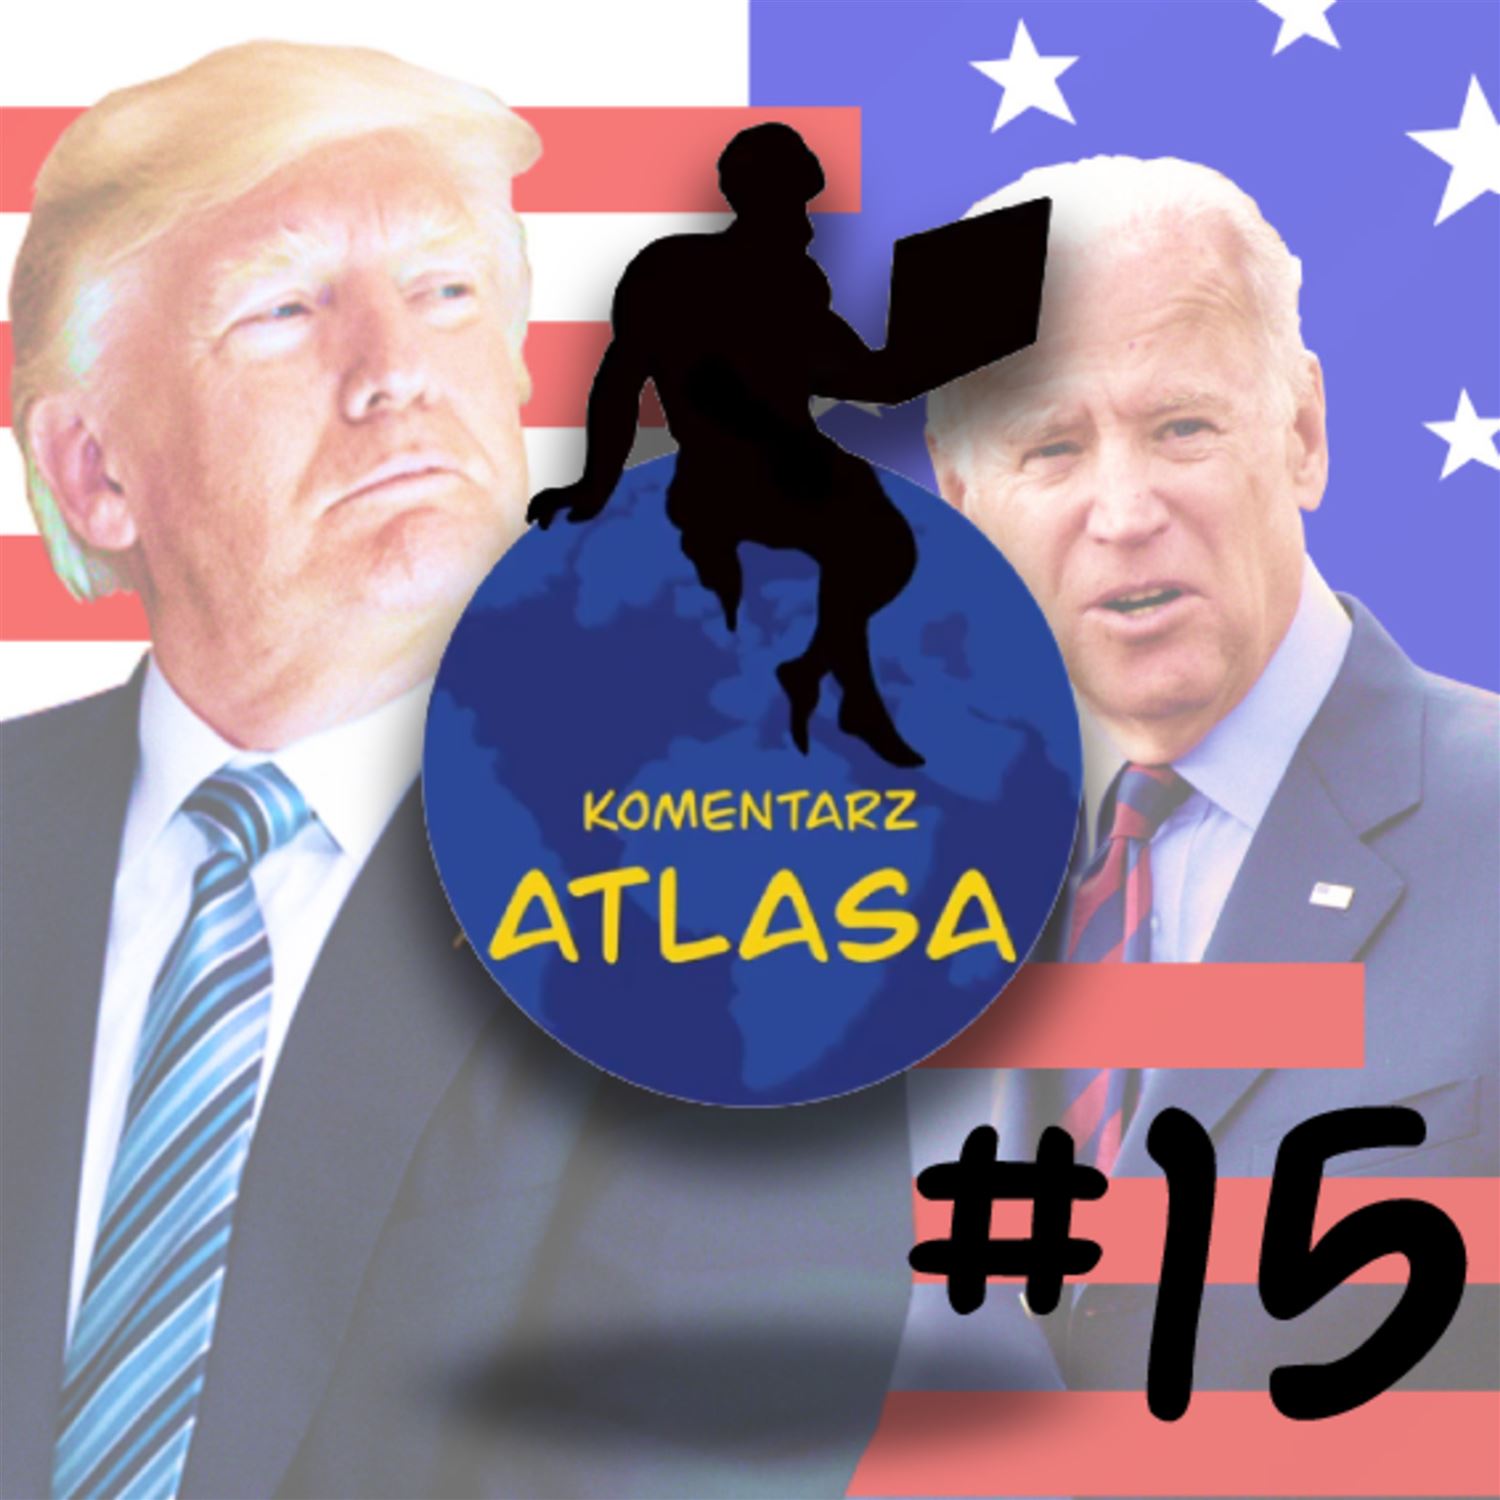 Komentarz Atlasa #15: O wyborach prezydenckich w USA, Bidenie, Trumpie i przyszłości USA (NA LUZIE)